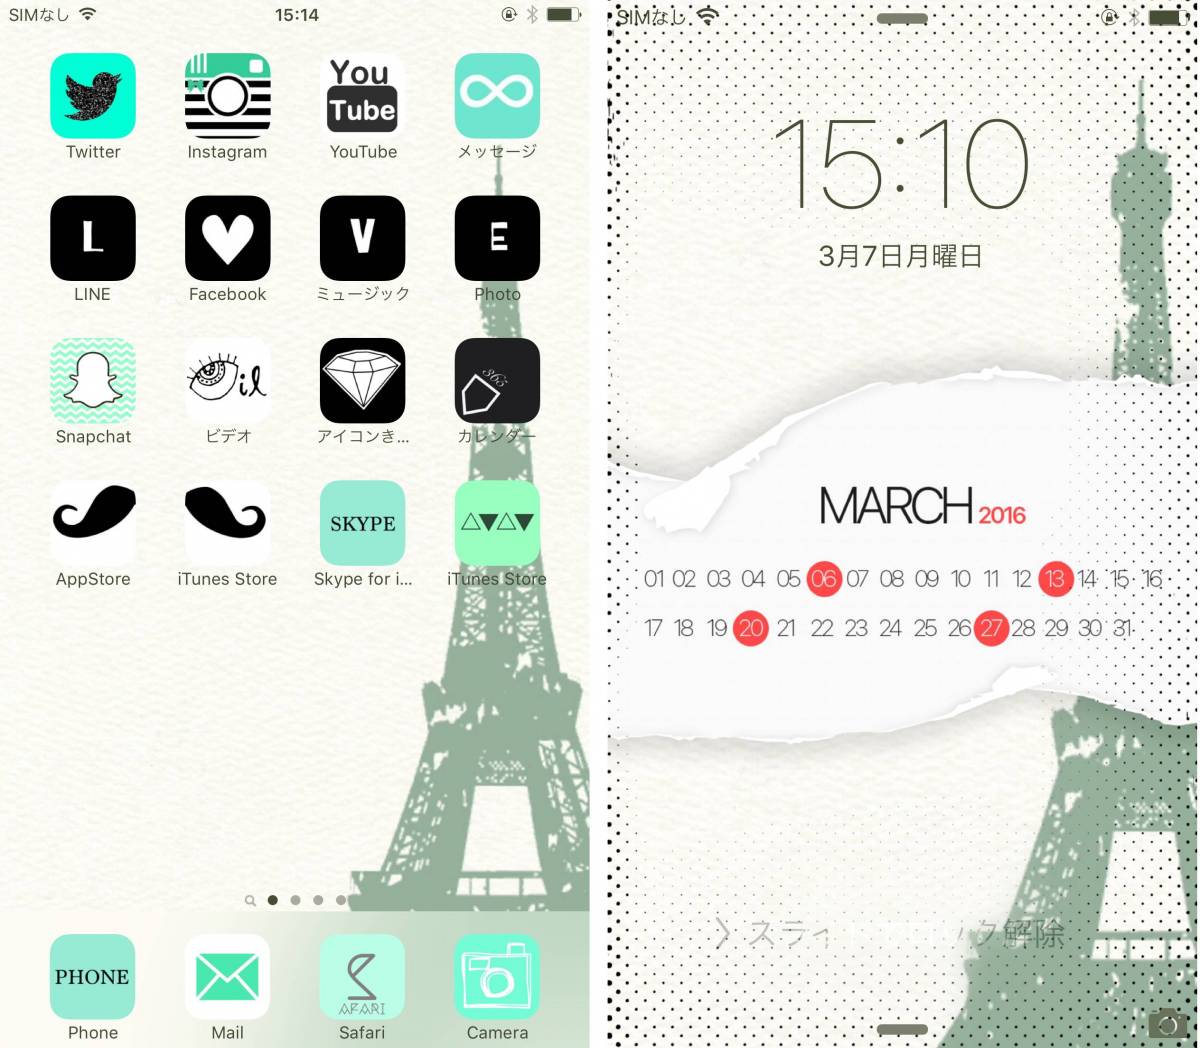 Iphoneホーム画面を超オシャレに 無料でかわいいカスタム術の画像 17枚目 Appliv Topics